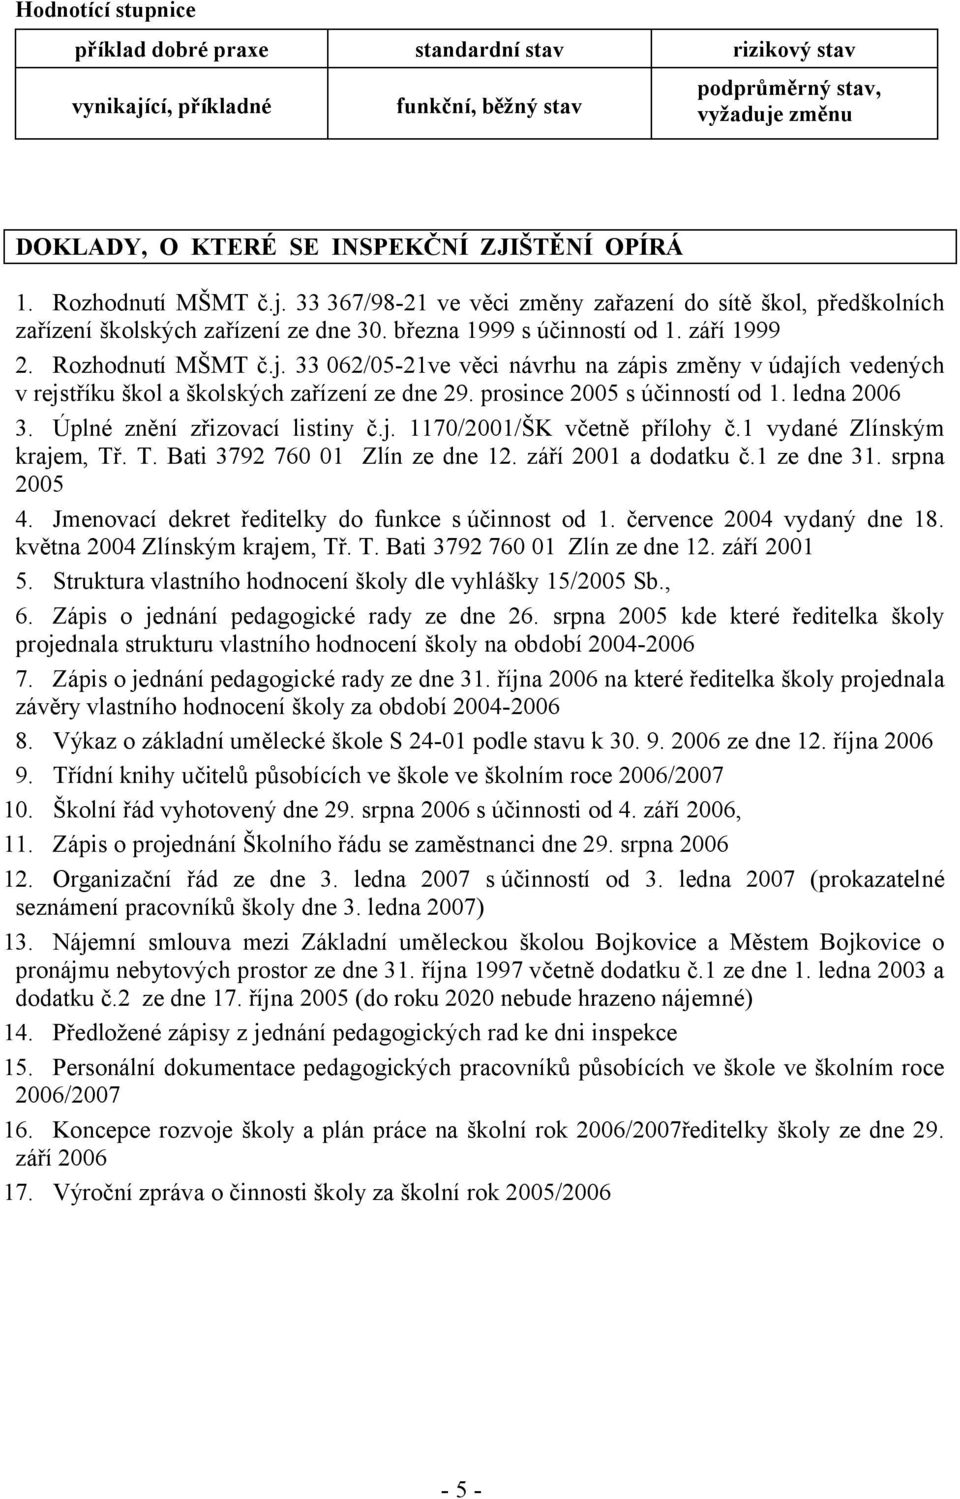 prosince 2005 s účinností od 1. ledna 2006 3. Úplné znění zřizovací listiny č.j. 1170/2001/ŠK včetně přílohy č.1 vydané Zlínským krajem, Tř. T. Bati 3792 760 01 Zlín ze dne 12. září 2001 a dodatku č.